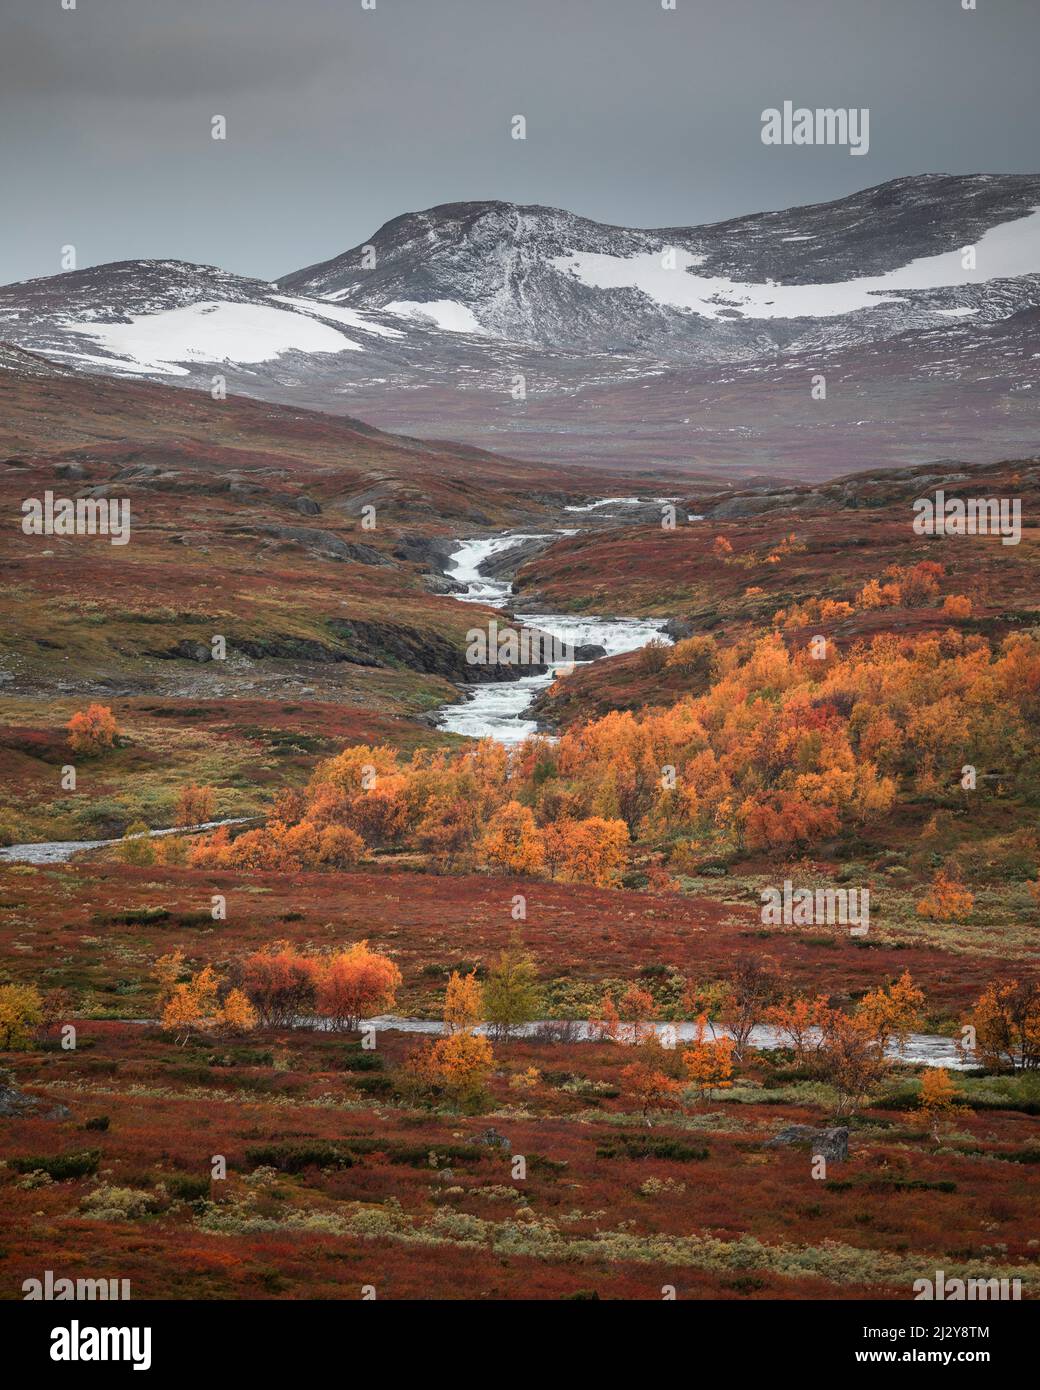 Rivière avec des montagnes enneigées et des arbres en automne le long de la route de la nature, sur le plateau de Vildmarksvagen à Jämtland en automne en Suède Banque D'Images